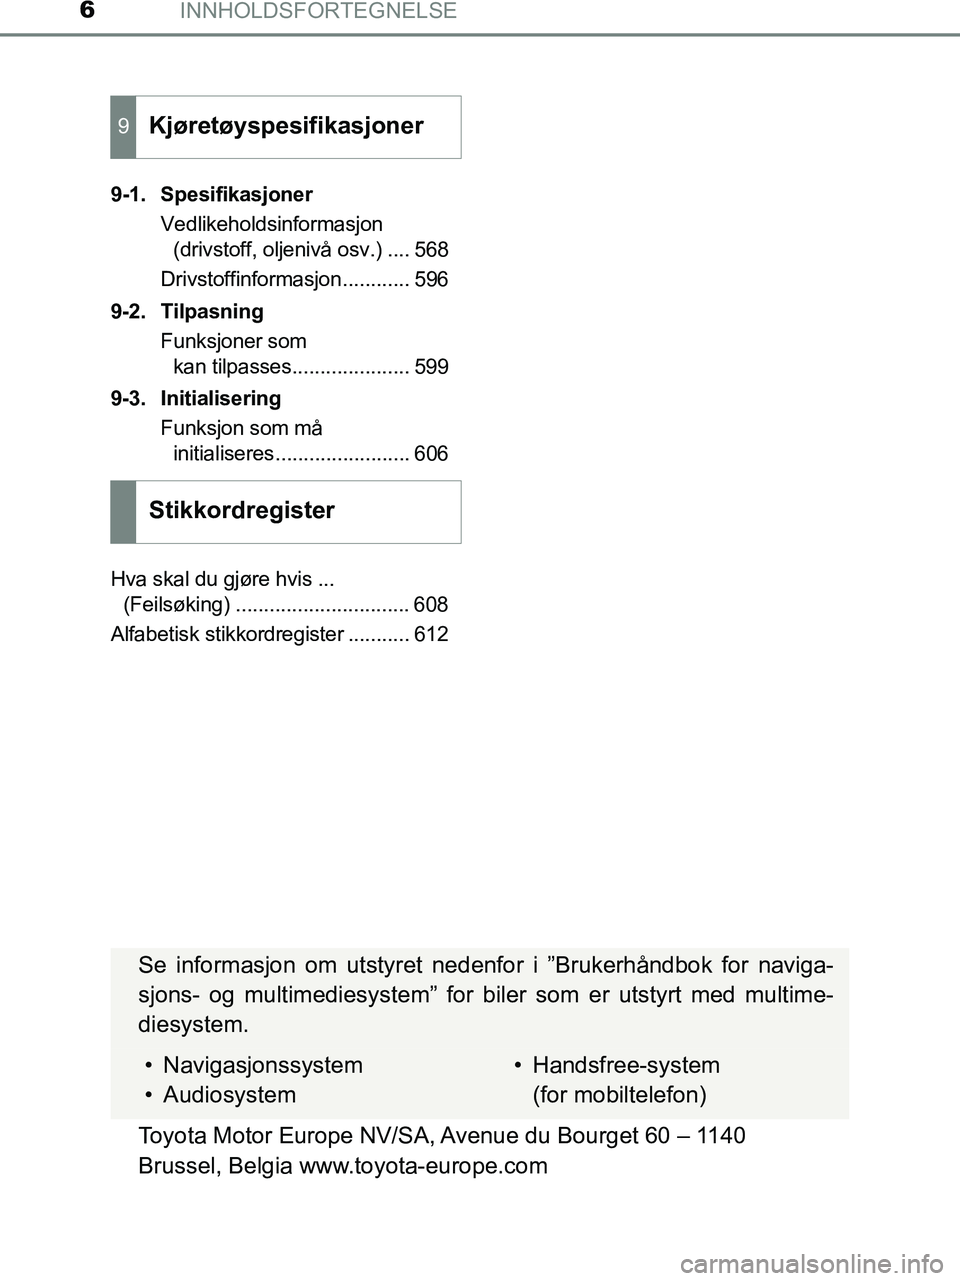 TOYOTA HILUX 2018  Instruksjoner for bruk (in Norwegian) INNHOLDSFORTEGNELSE6
HILUX_OM_OM0K375NO_(EE)9-1. Spesifikasjoner
Vedlikeholdsinformasjon (drivstoff, oljenivå osv.) .... 568
Drivstoffinformasjon............ 596
9-2. Tilpasning Funksjoner som kan ti